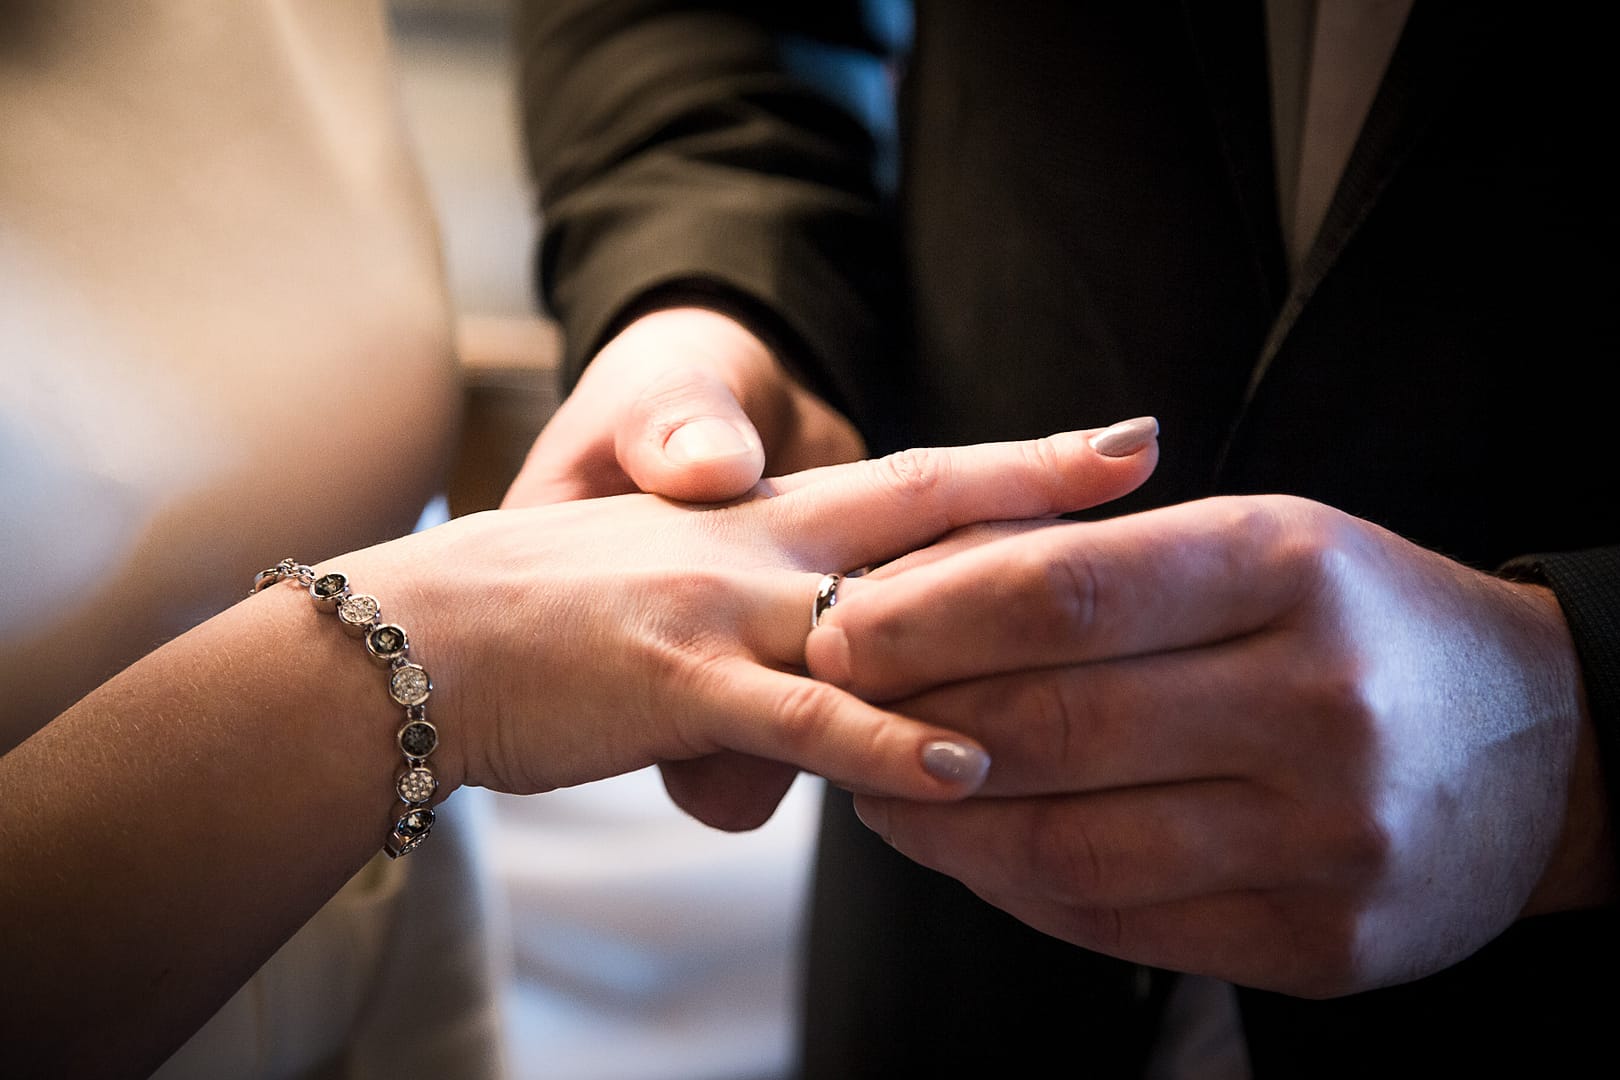 Bräutigams rechte Hand hält die rechte Hand der Braut fest, während er mit seiner linken Hand den Ehering über den Ringfinger der Braut anstecket.